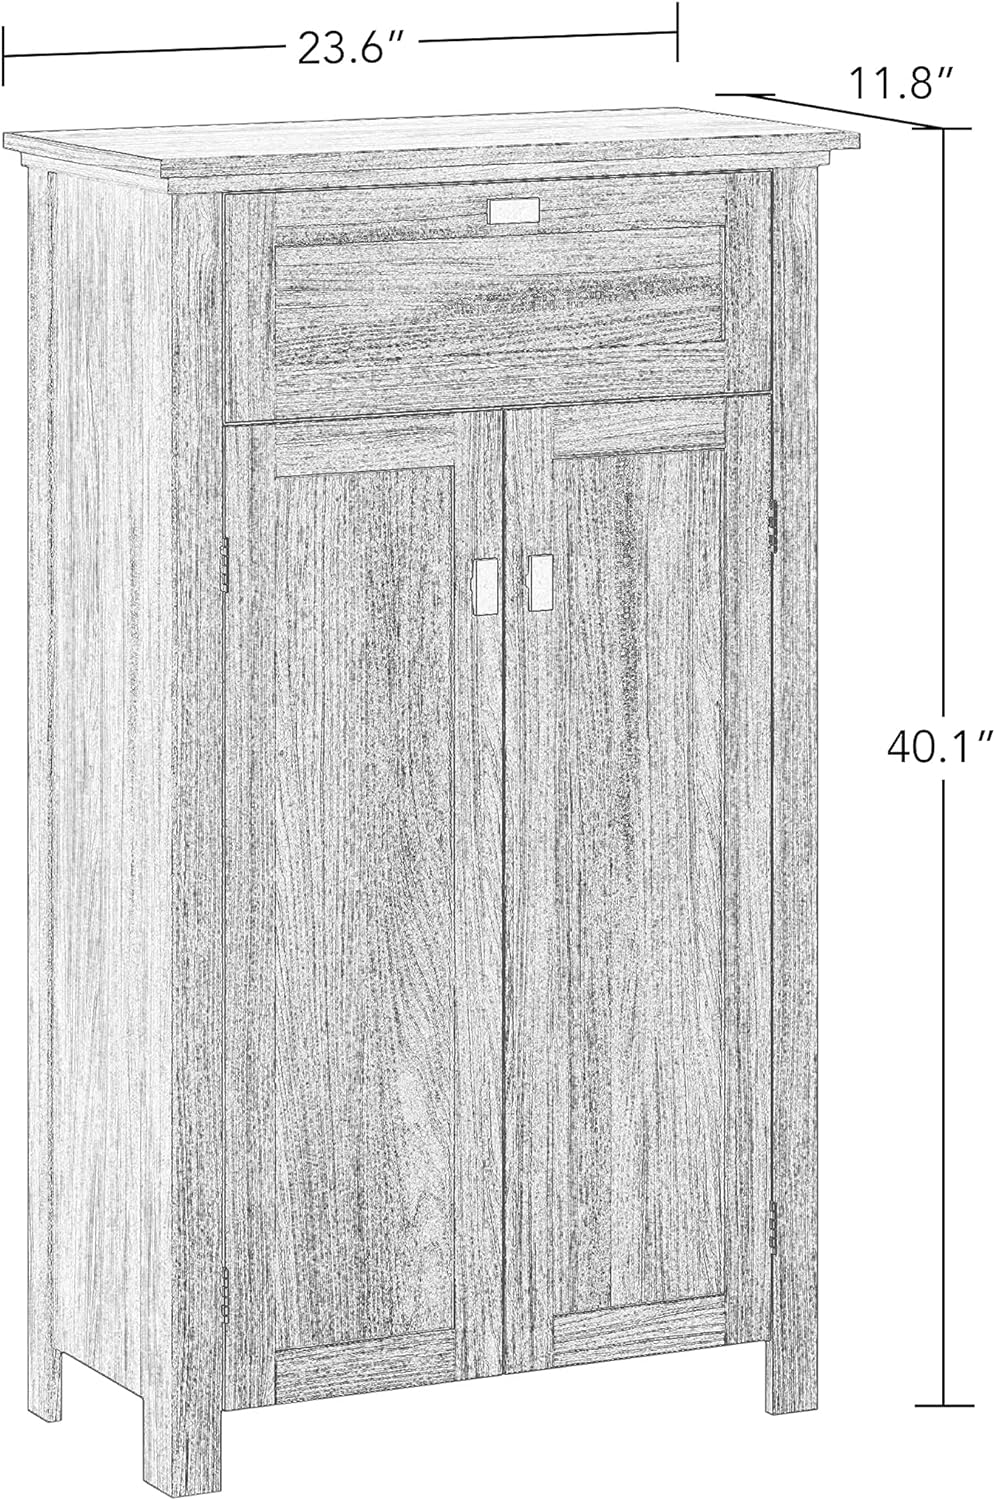 RiverRidge Hayward Armario de piso de chapa de dos puertas, sin tamaño, grano